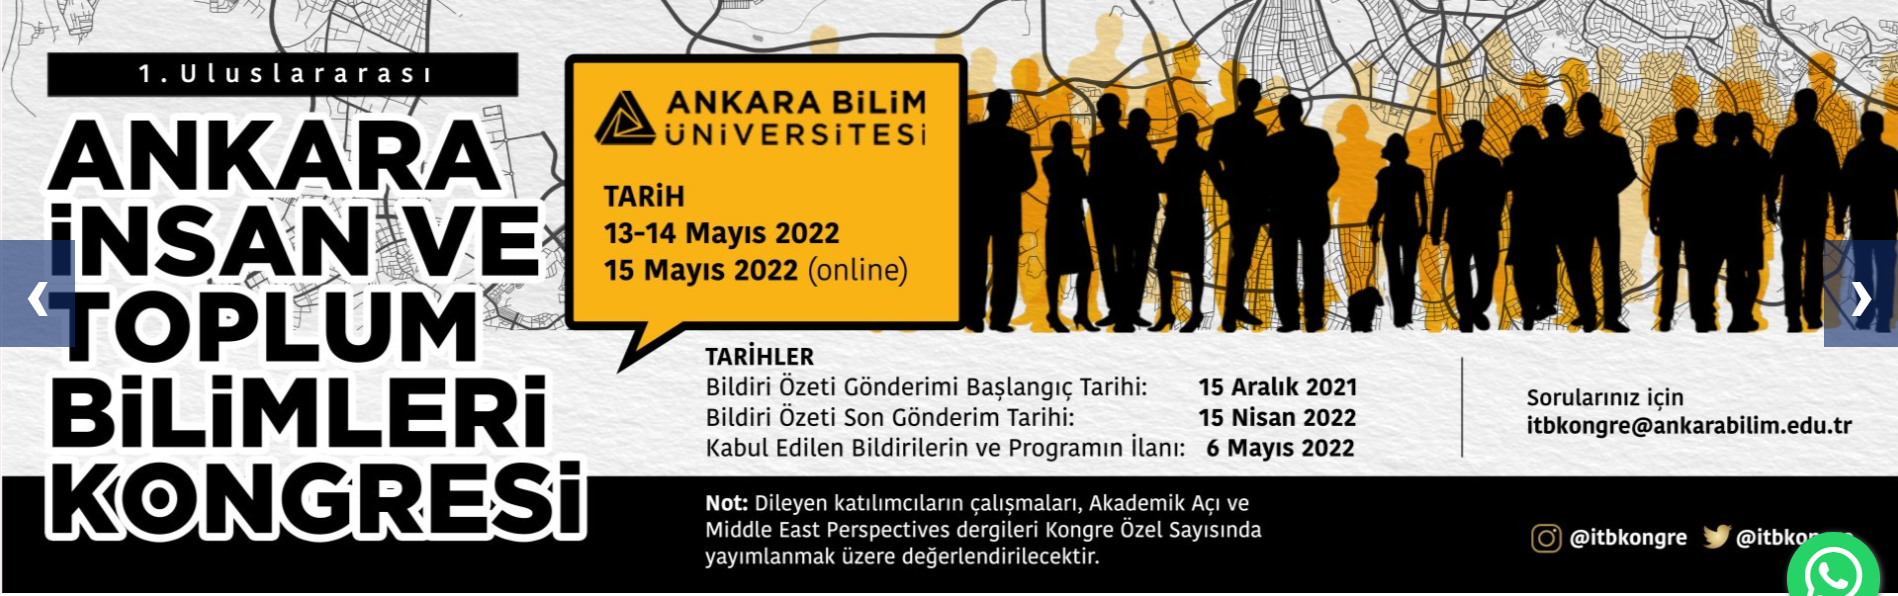 1. Uluslararası Ankara İnsan ve Toplum Bilimleri Kongresi